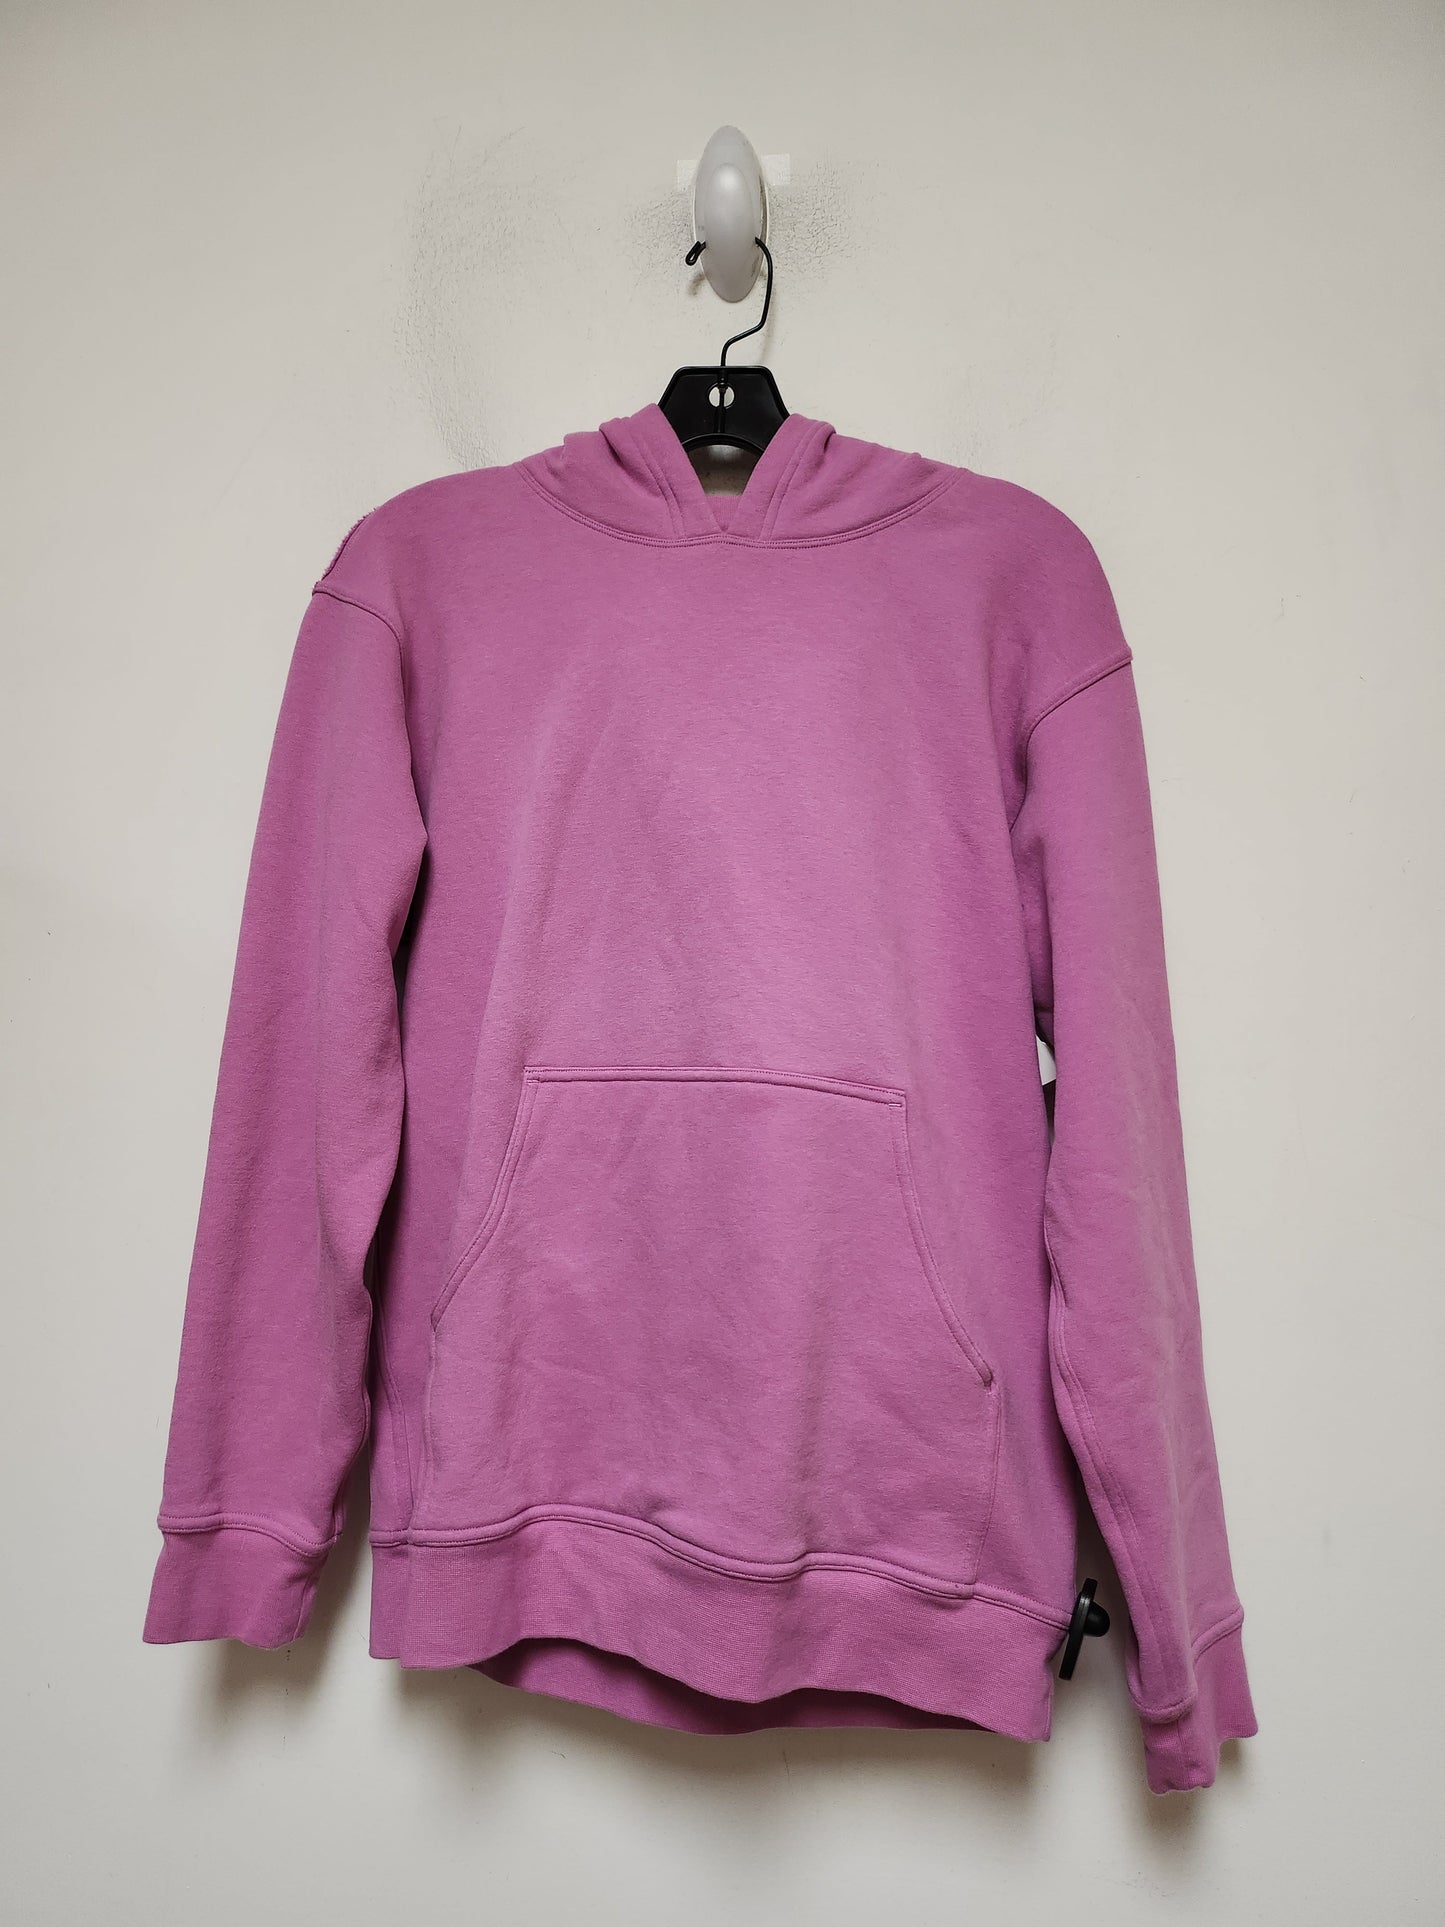 Pink Athletic Sweatshirt Hoodie Lululemon, Size S